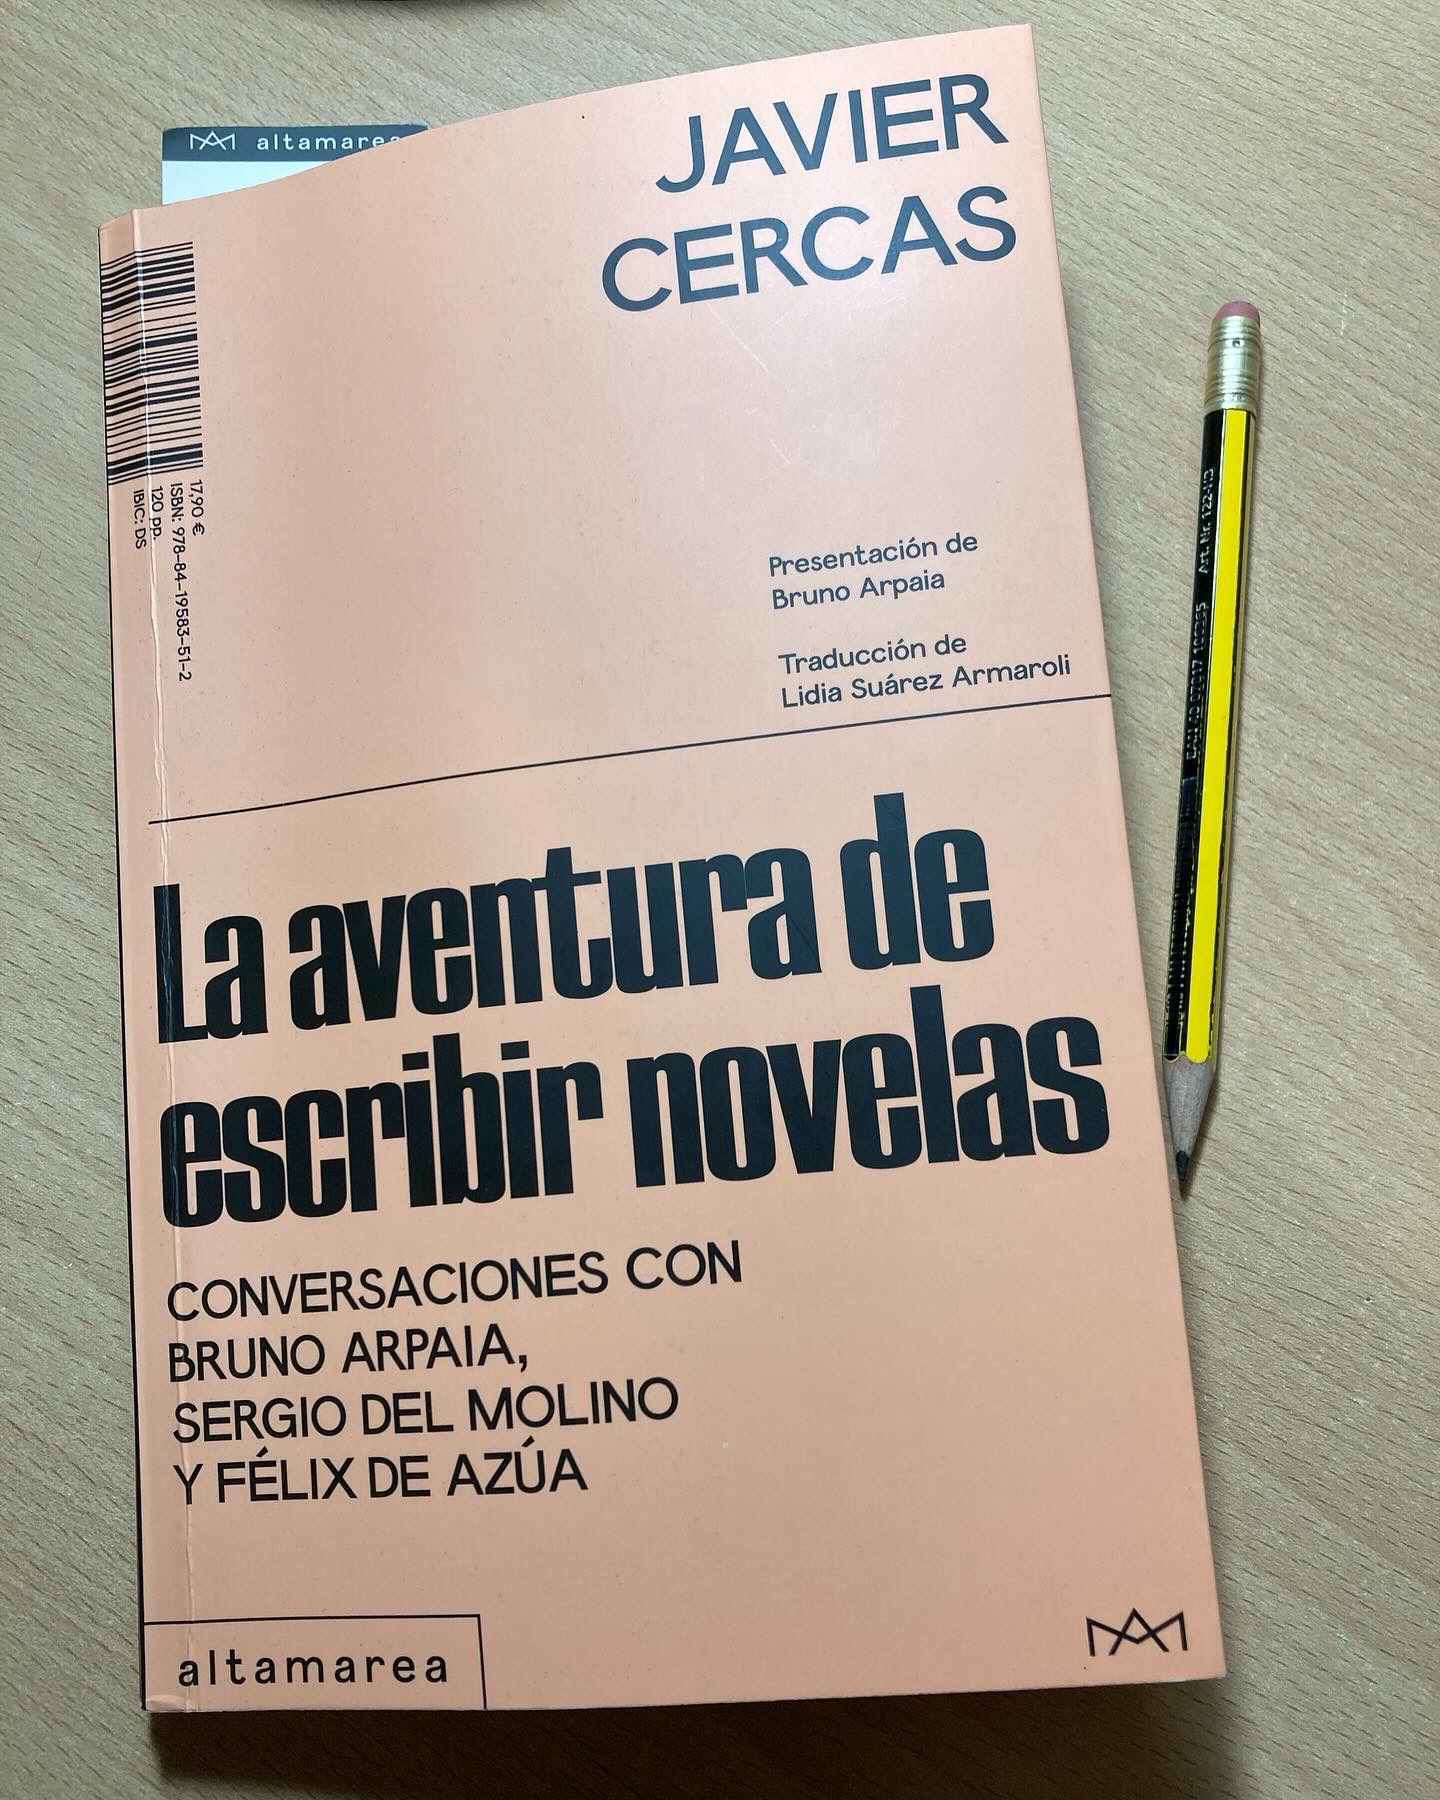 La aventura de escribir novelas, de Javier Cercas